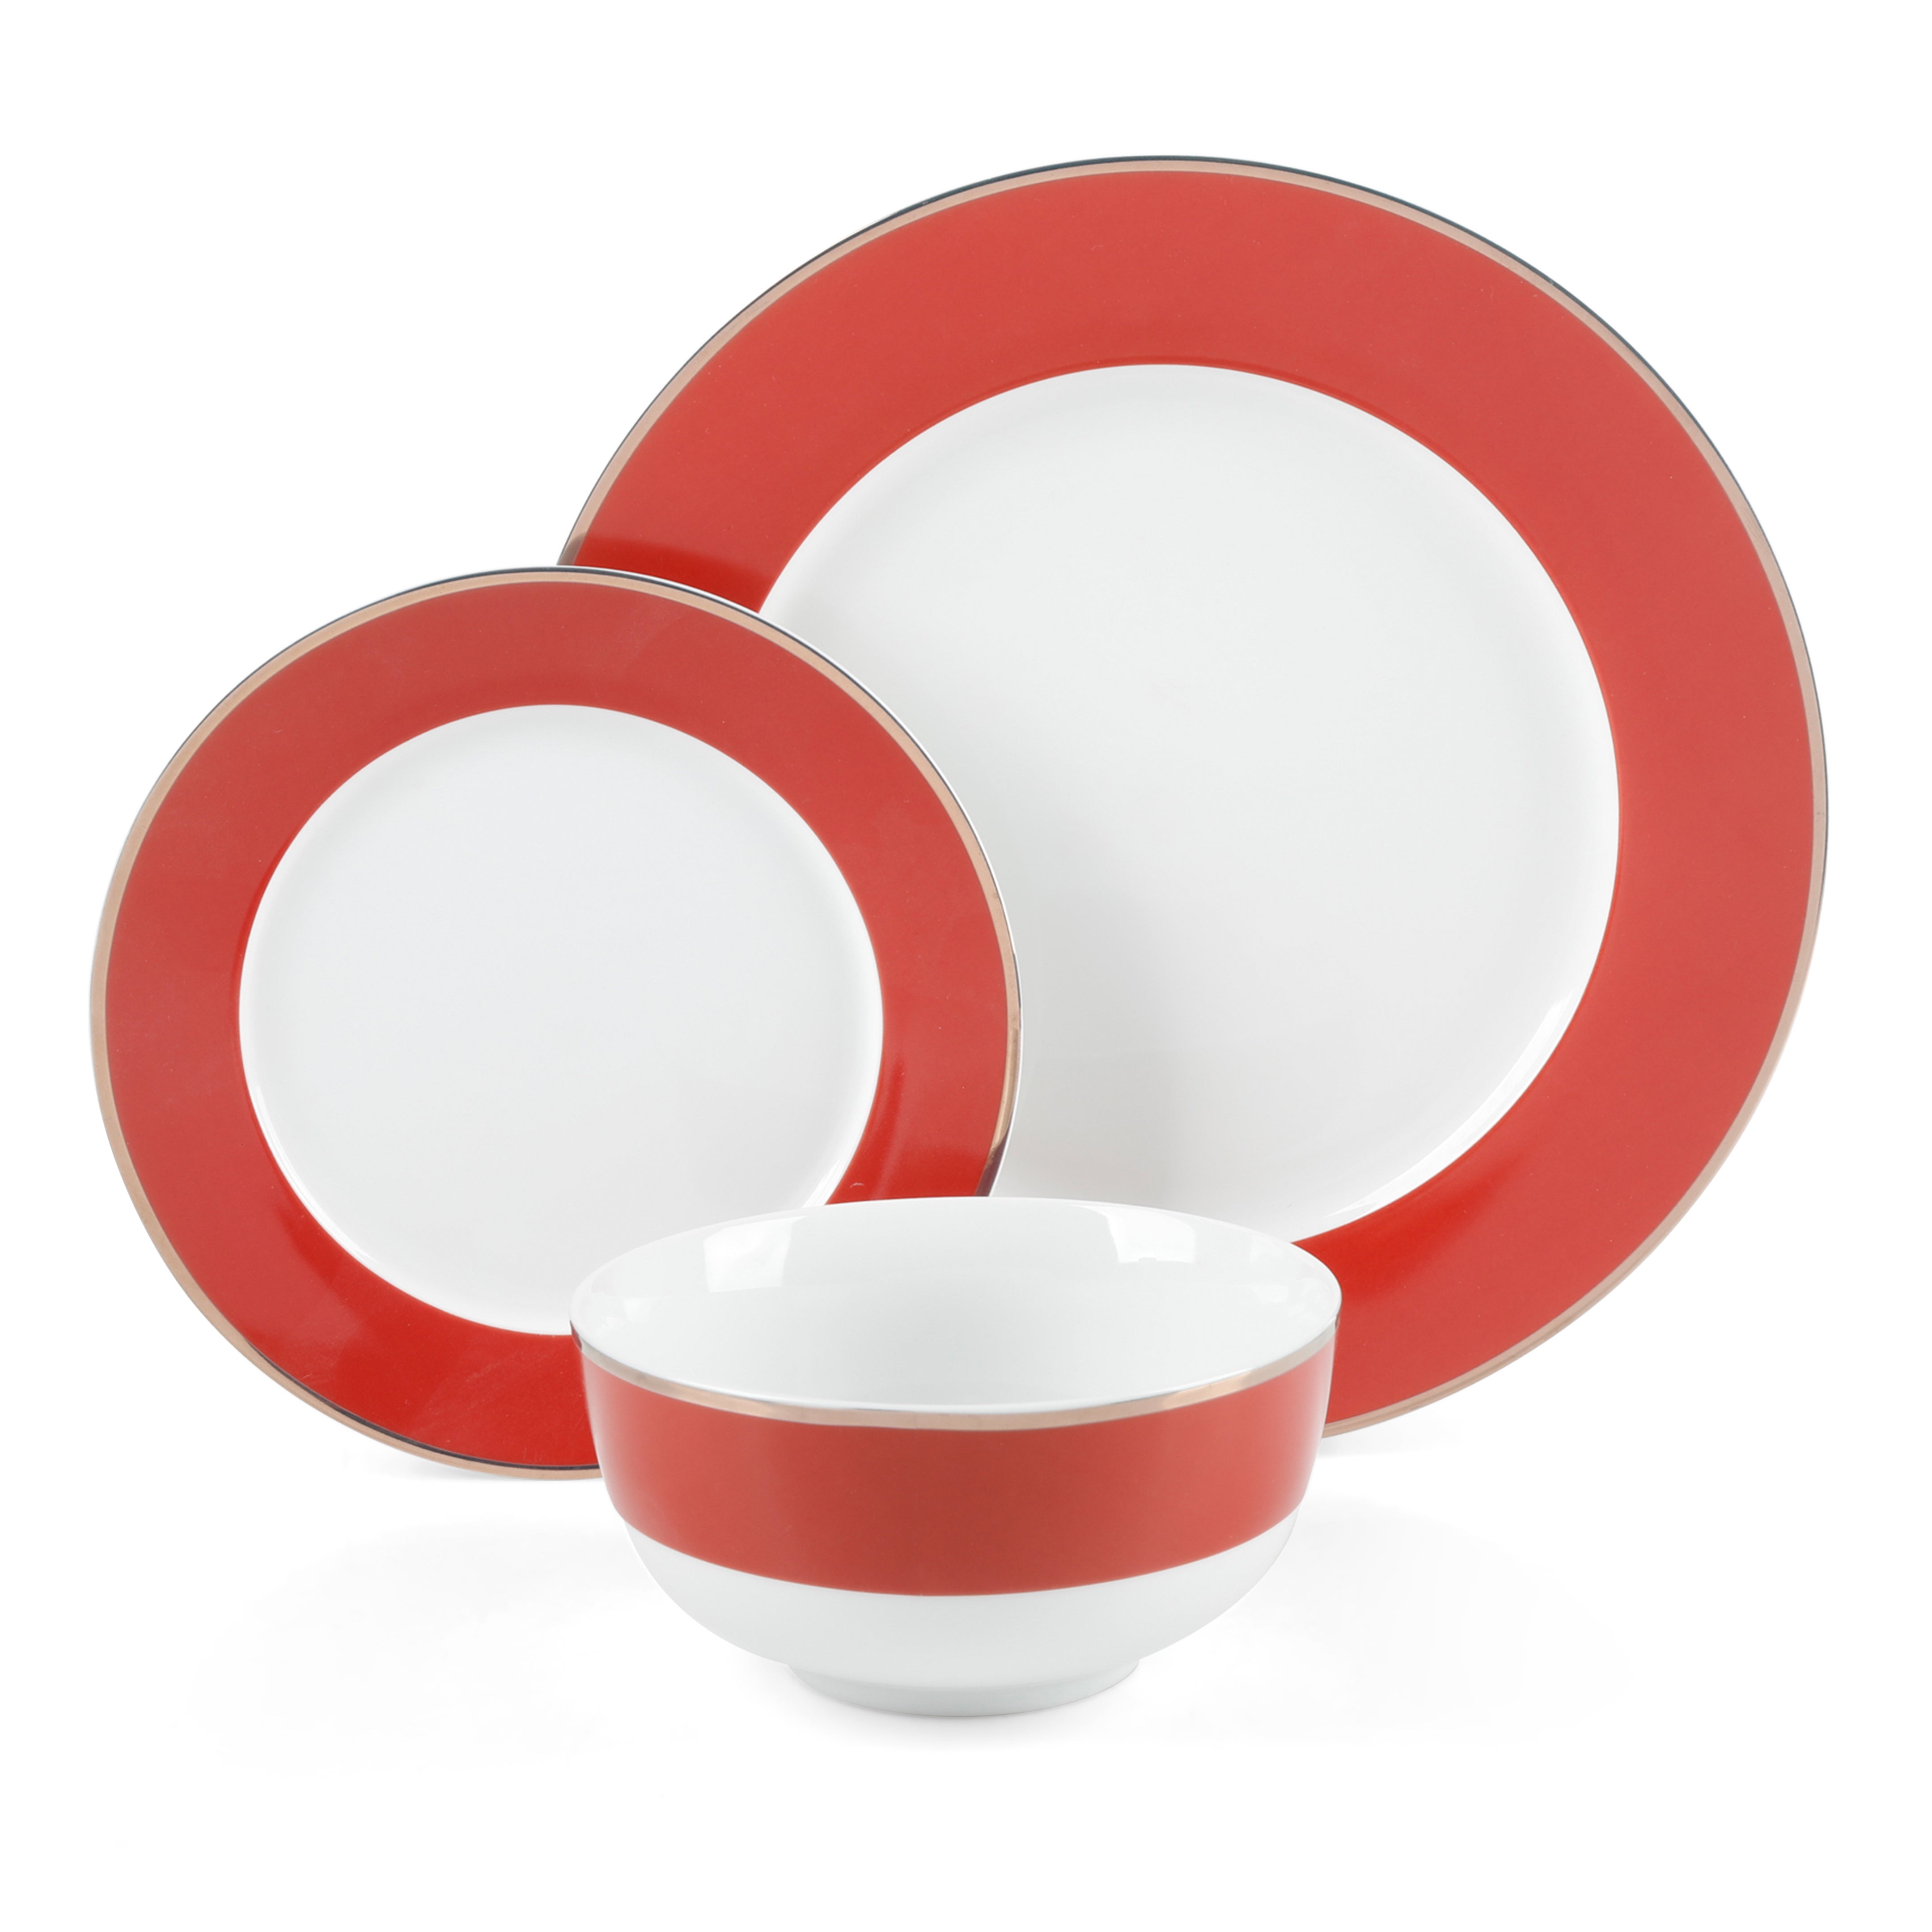 Martha Stewart Gracie Lane 12-Piece Porcelain Decorated Dinnerware Set